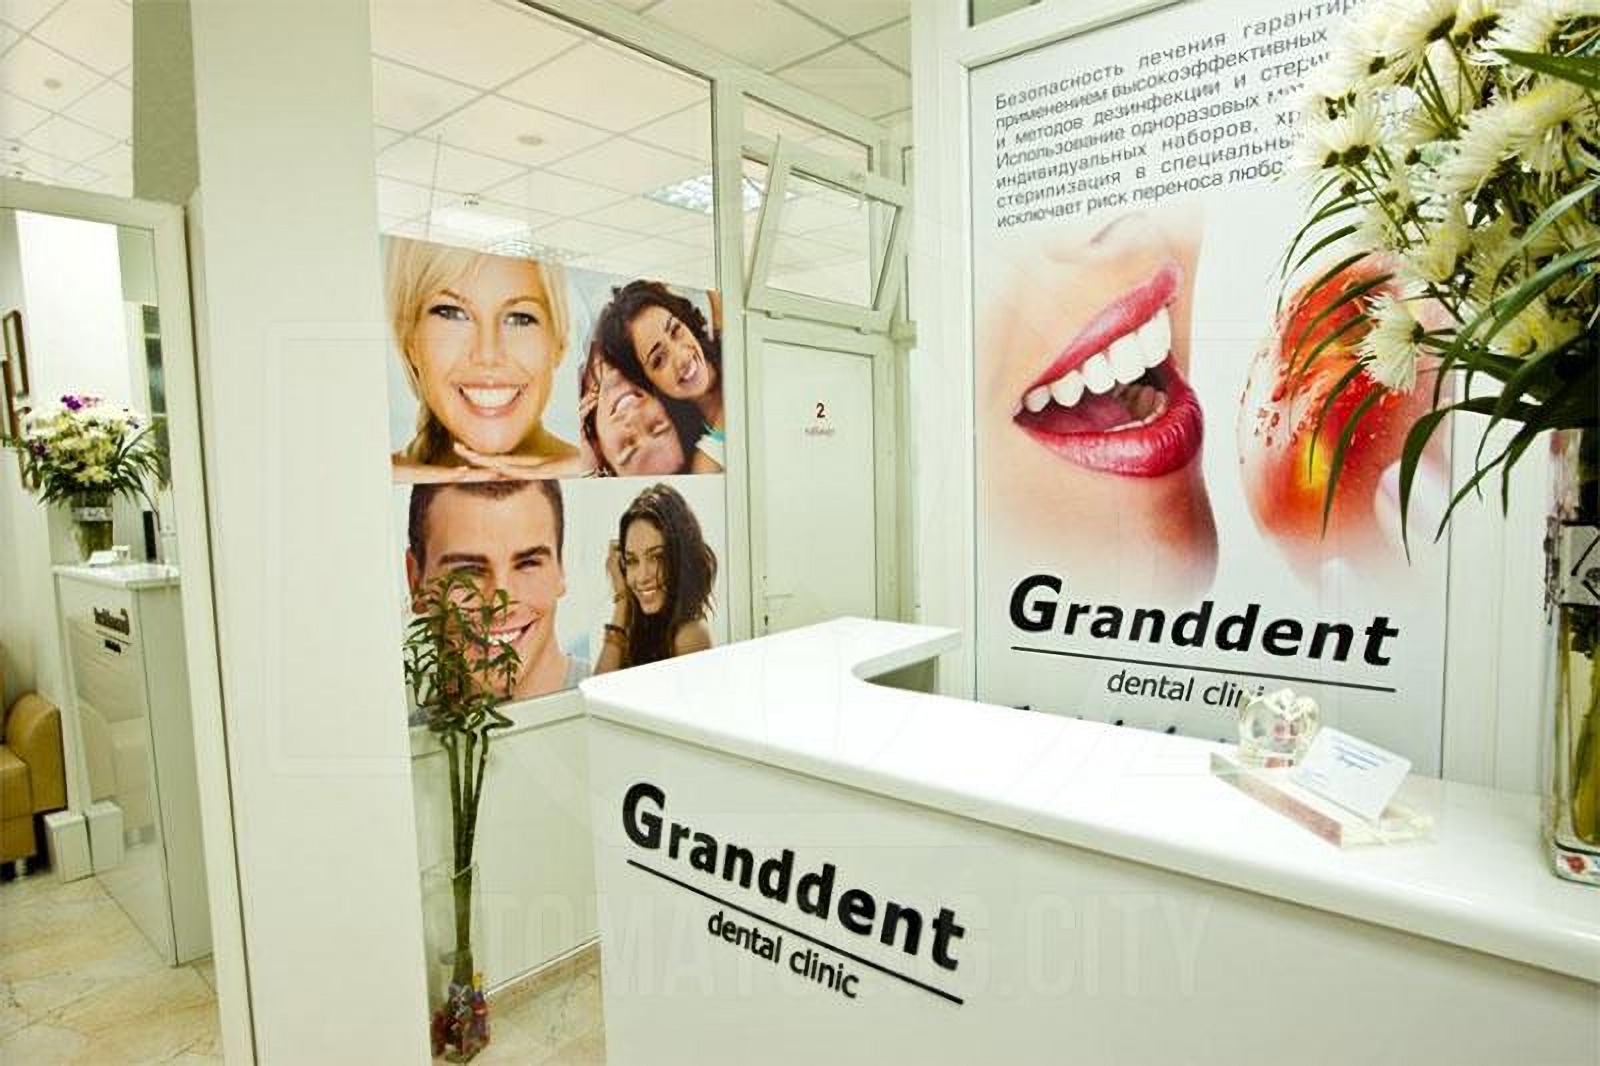 Администратор в стоматологической клинике Granddent в Одессе Украина